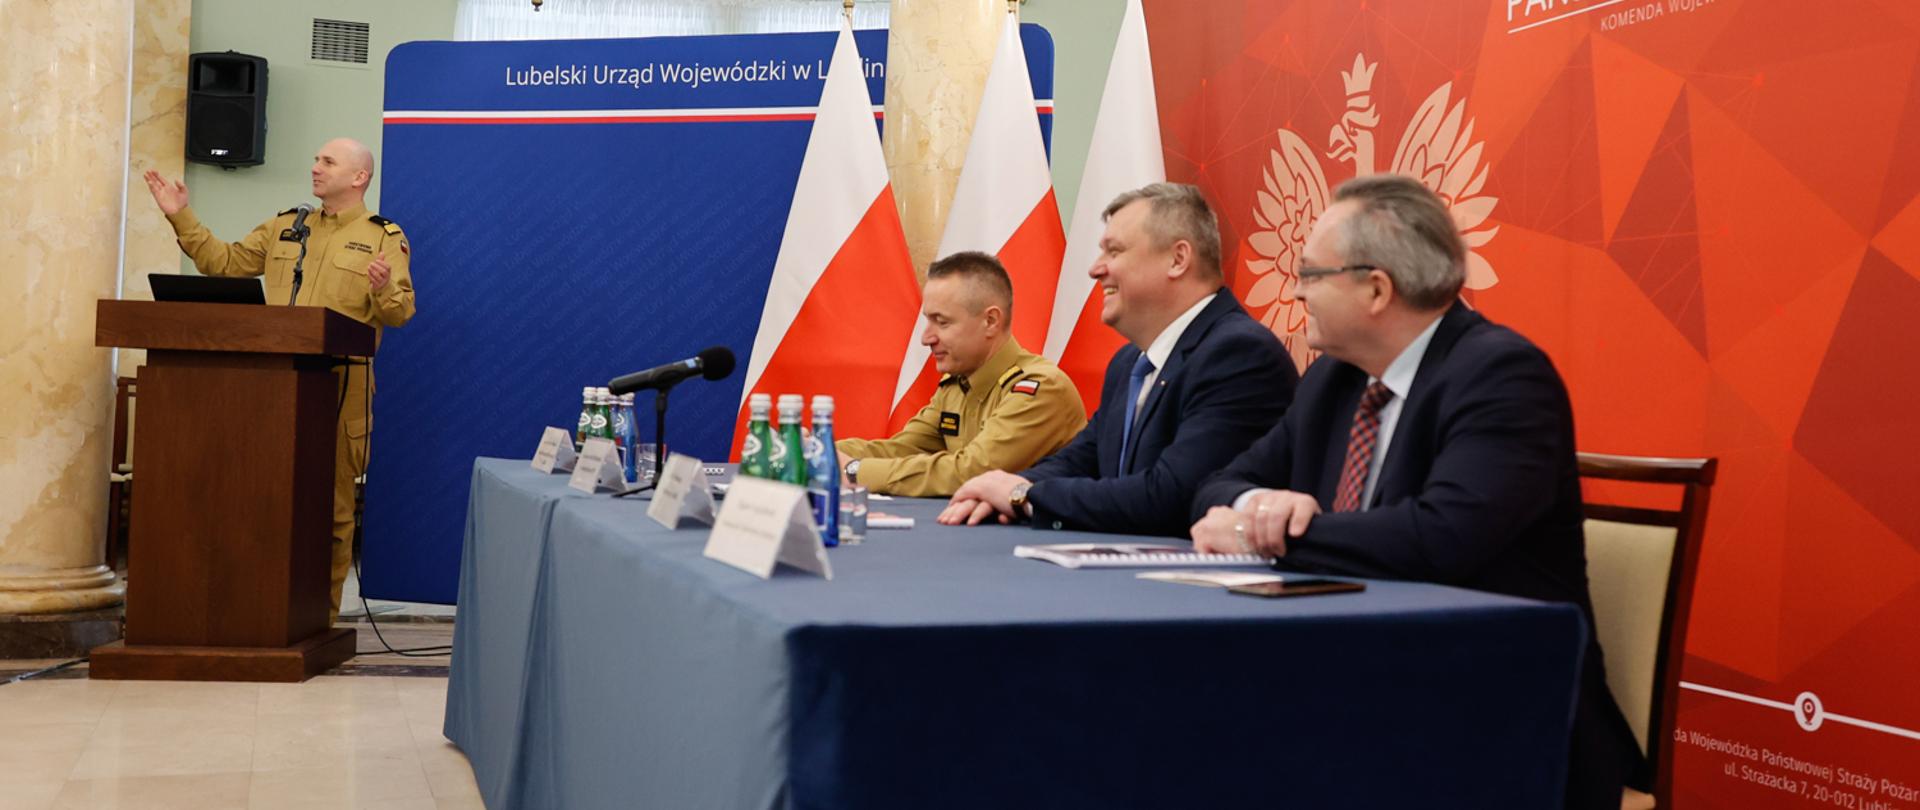 Komendant główny PSP wraz z lubelskim komendantem wojewódzkim PSP oraz przedstawicielem władz samorządowych podczas narady 